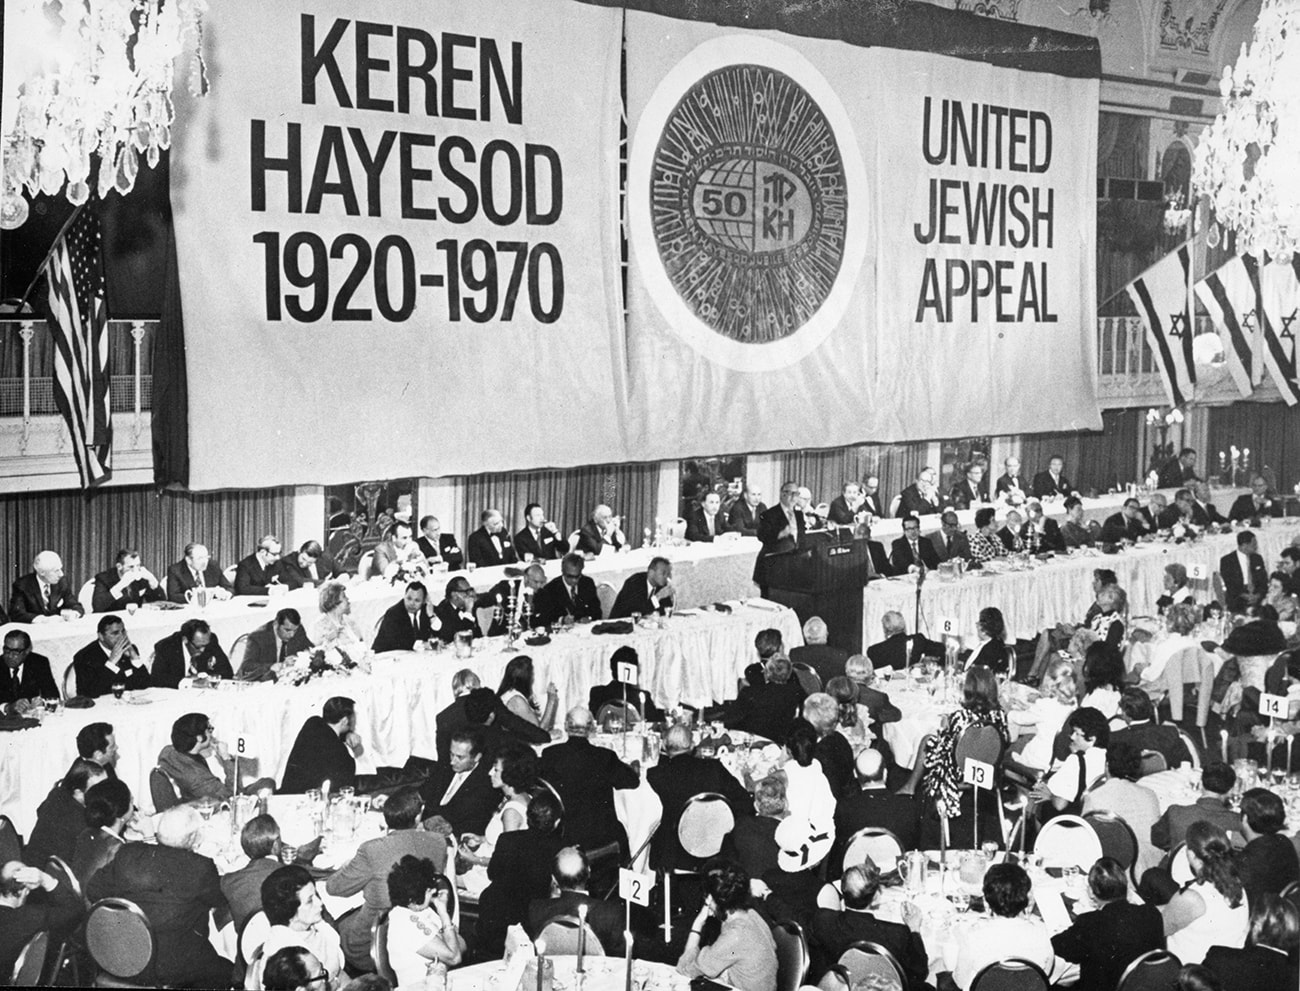 Il Presidente dell’Appello Unificato per Israele negli USA, A. Zinberg, durante il discorso per il cinquantenario del Keren Hayesod a New York, luglio 1970